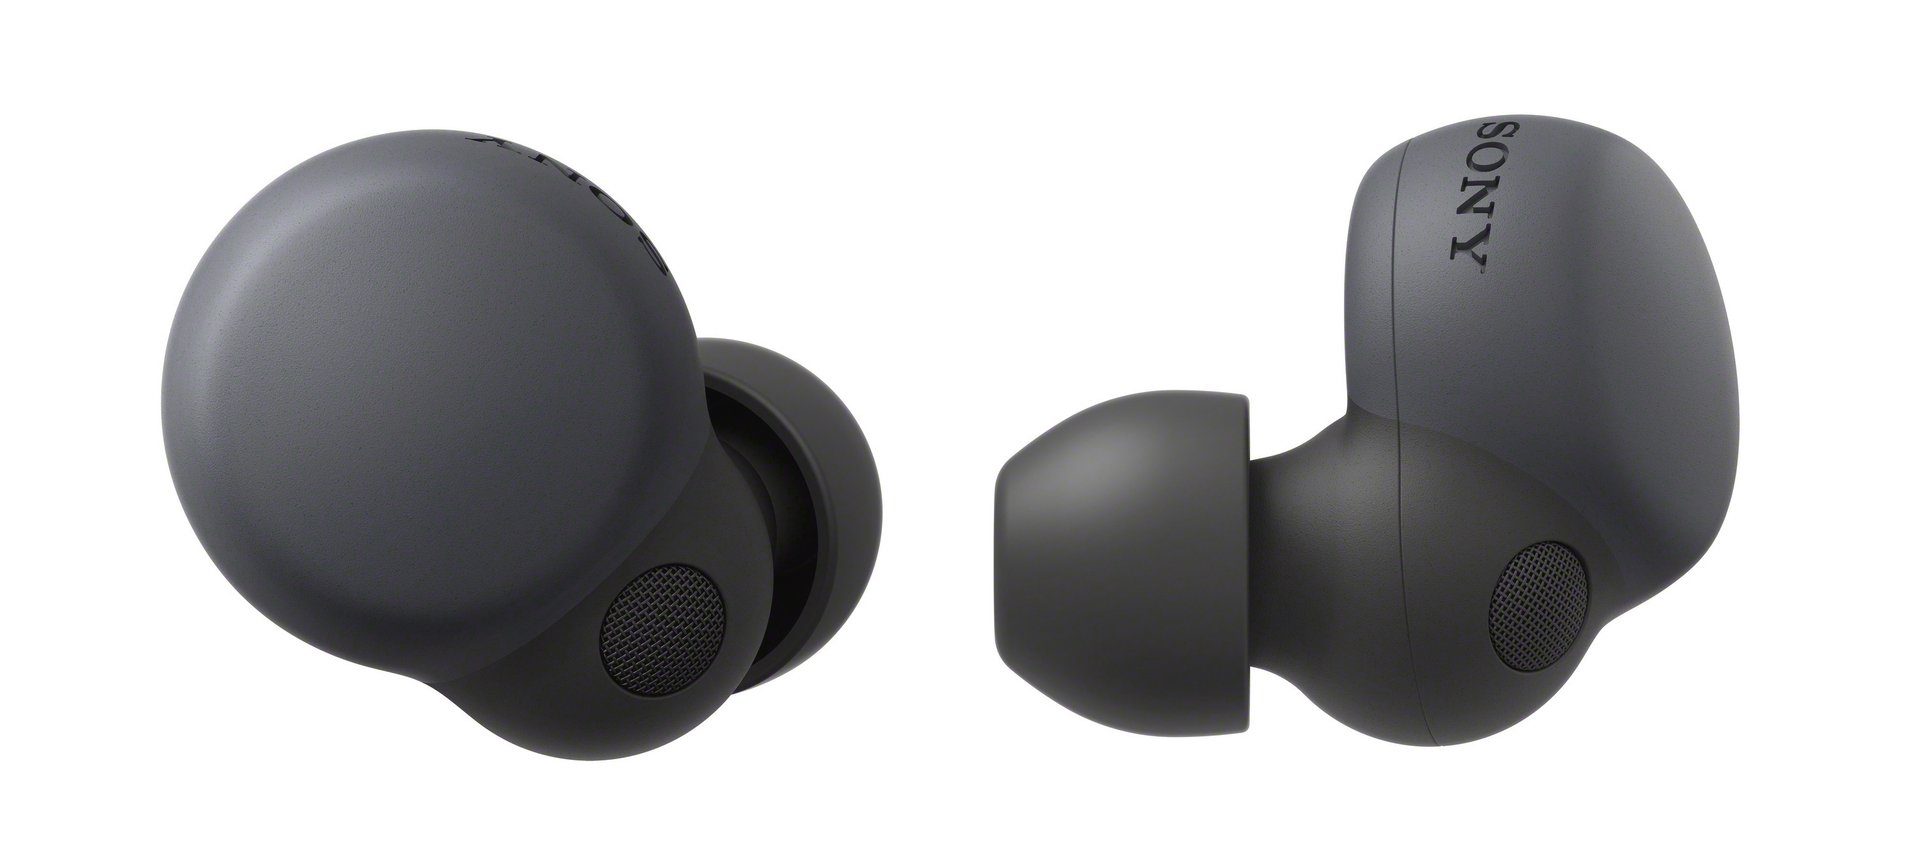 Sony LinkBuds S wireless (Noise-Cancelling, st. Wireless, Noise True Akkulaufzeit) Cancelling, Touch-Steuerung, Bluetooth, 20 NFC, In-Ear-Kopfhörer schwarz